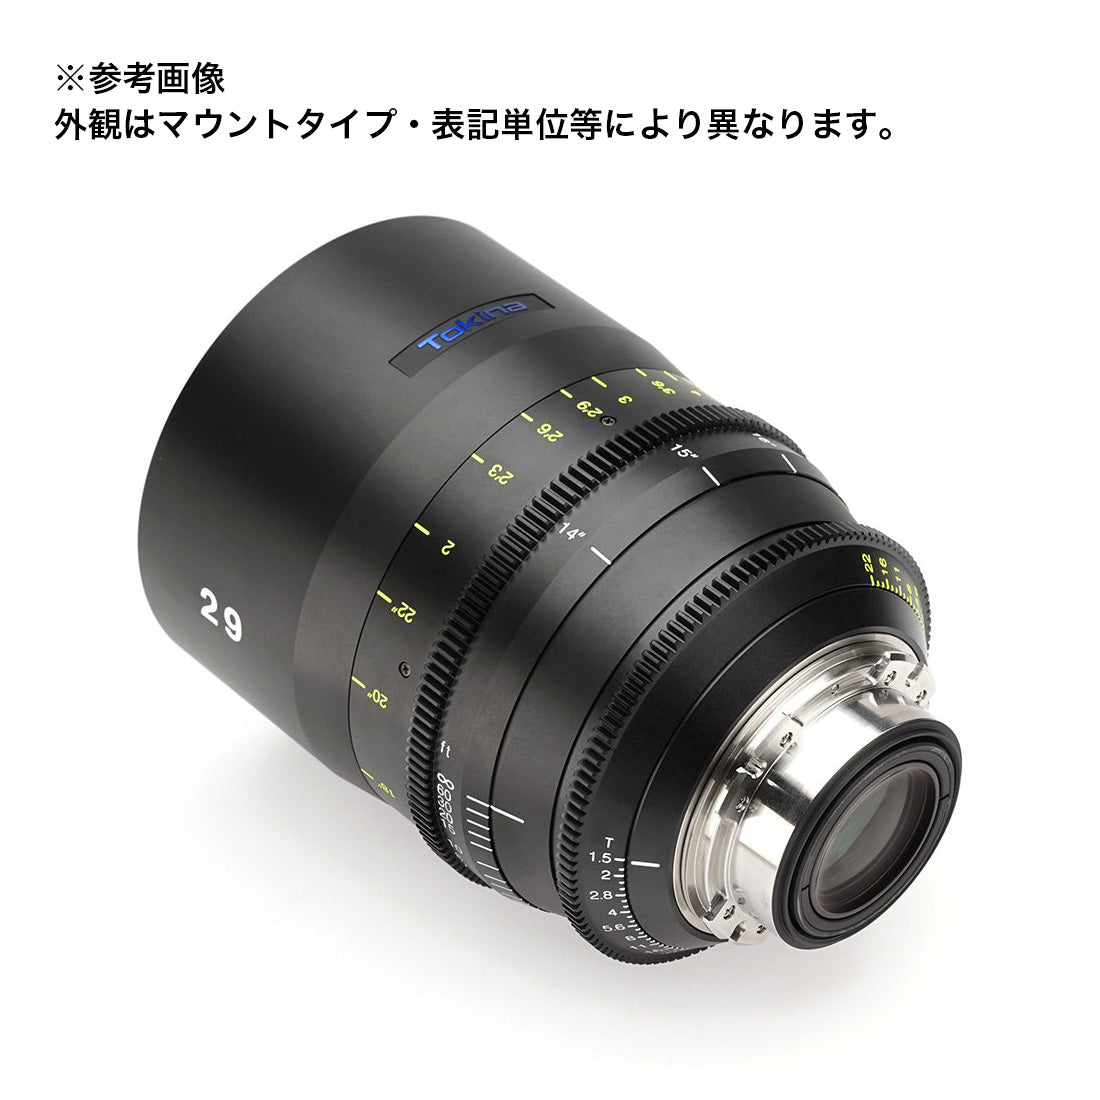 Tokina(トキナー) シネマプライムレンズ VISTA 29mm T1.5CINEMA LENS Eマウント メートル表記 [264251]